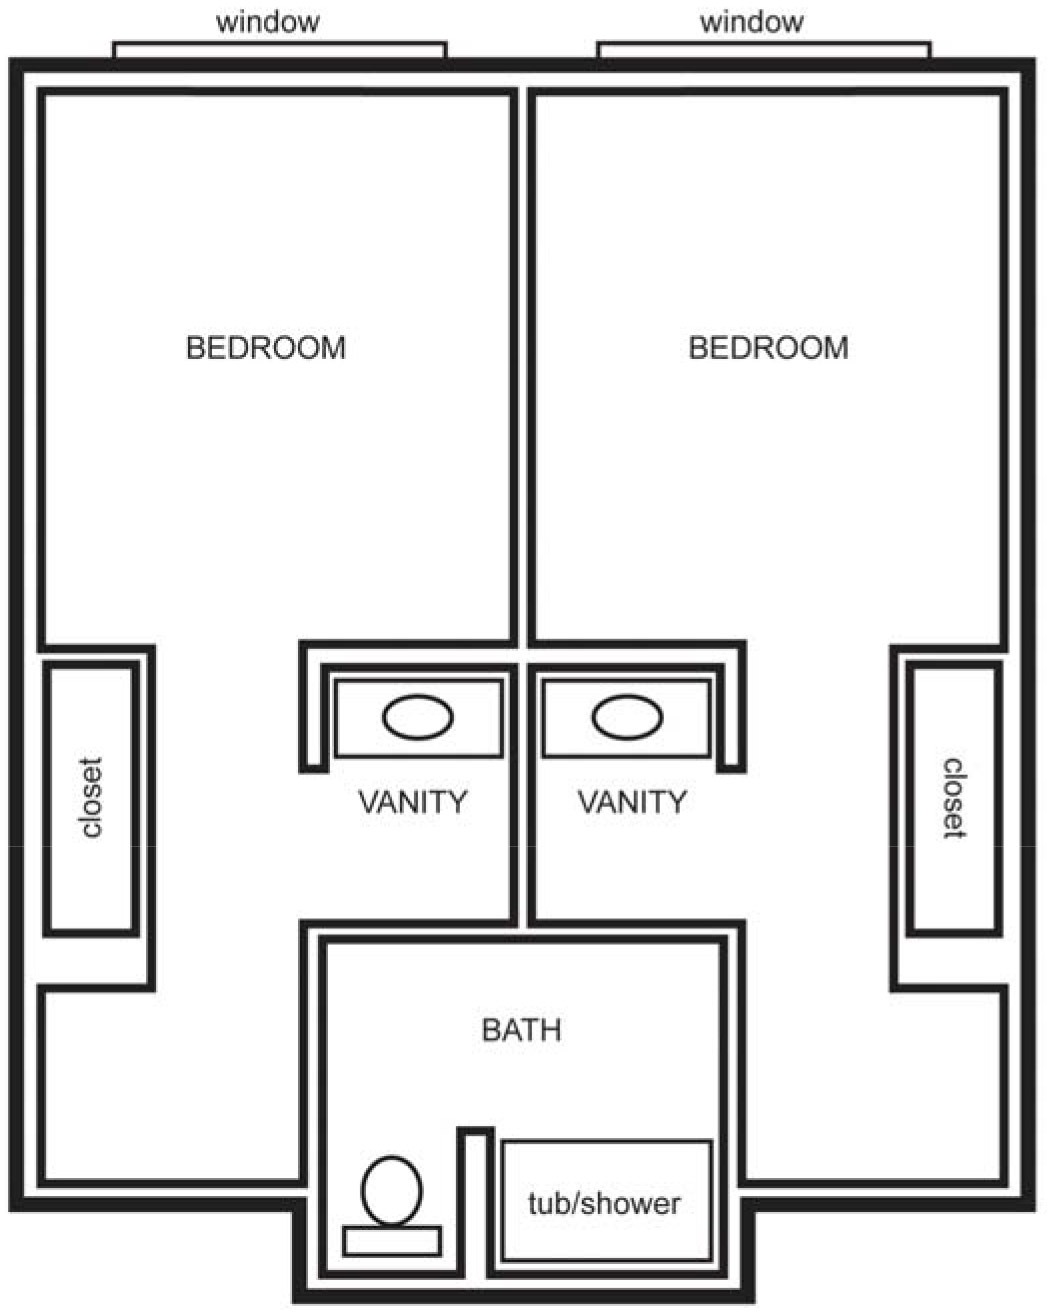 Sandhu 1 bedroom suite layout